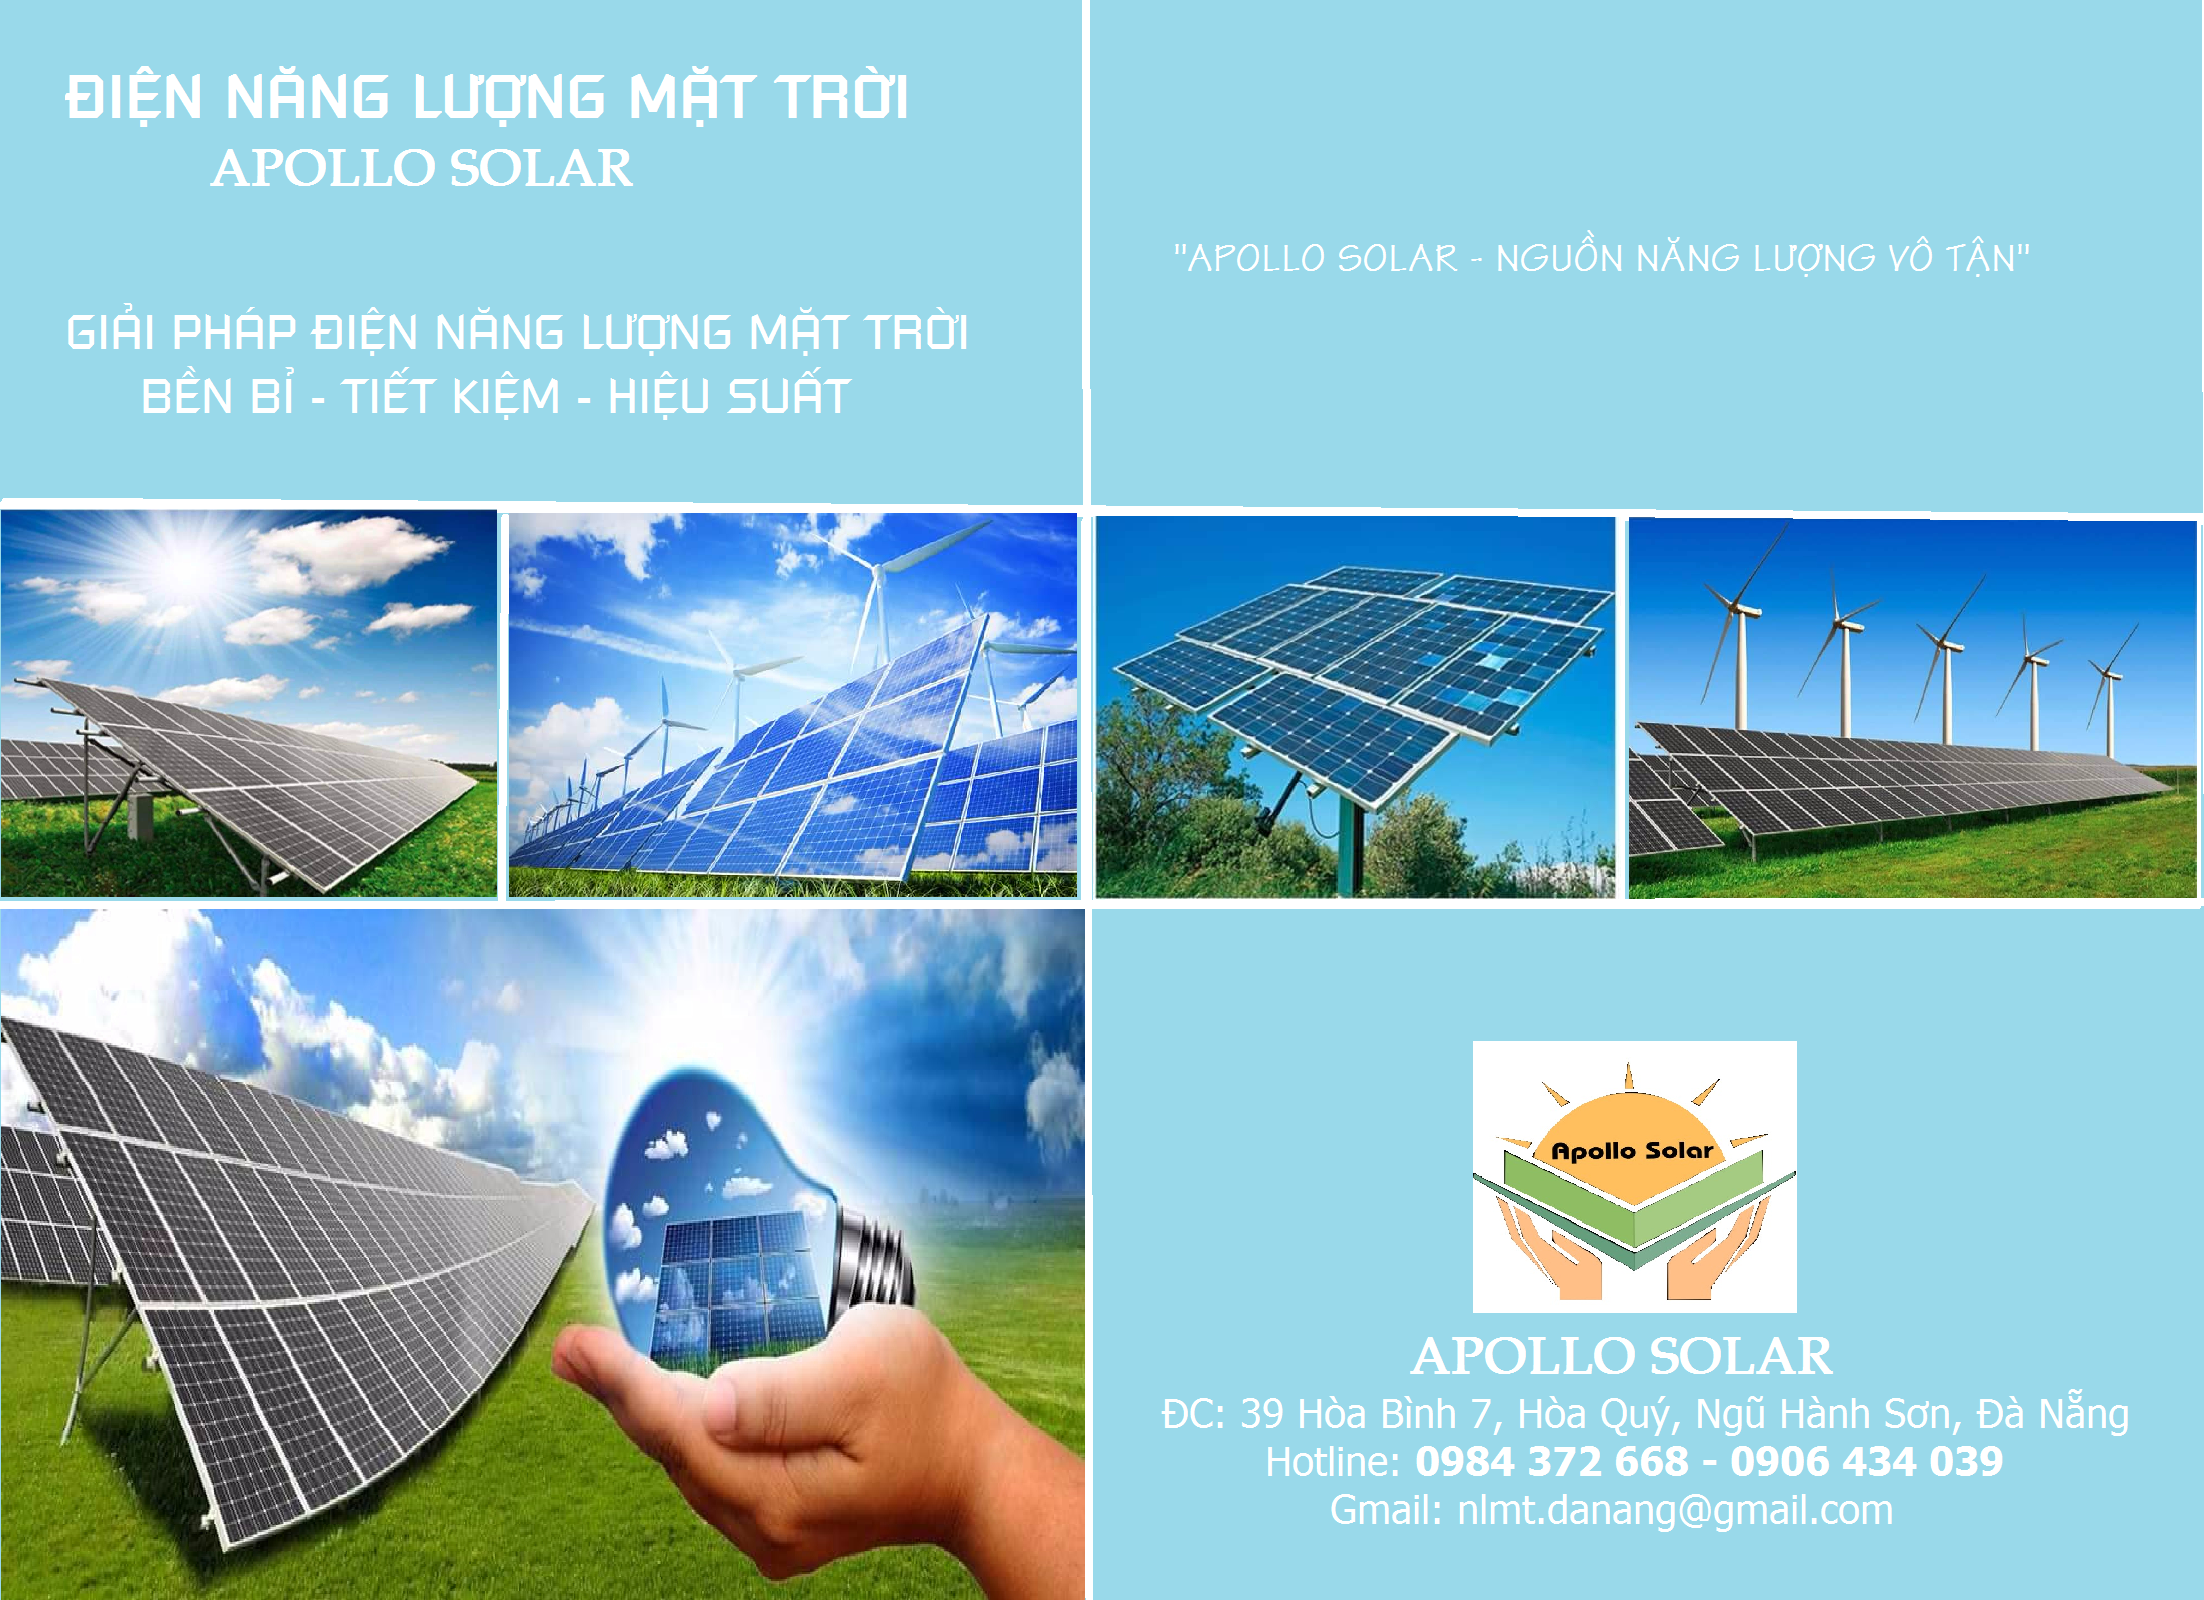 Thi công điện năng lượng mặt trời tại Đà Nẵng